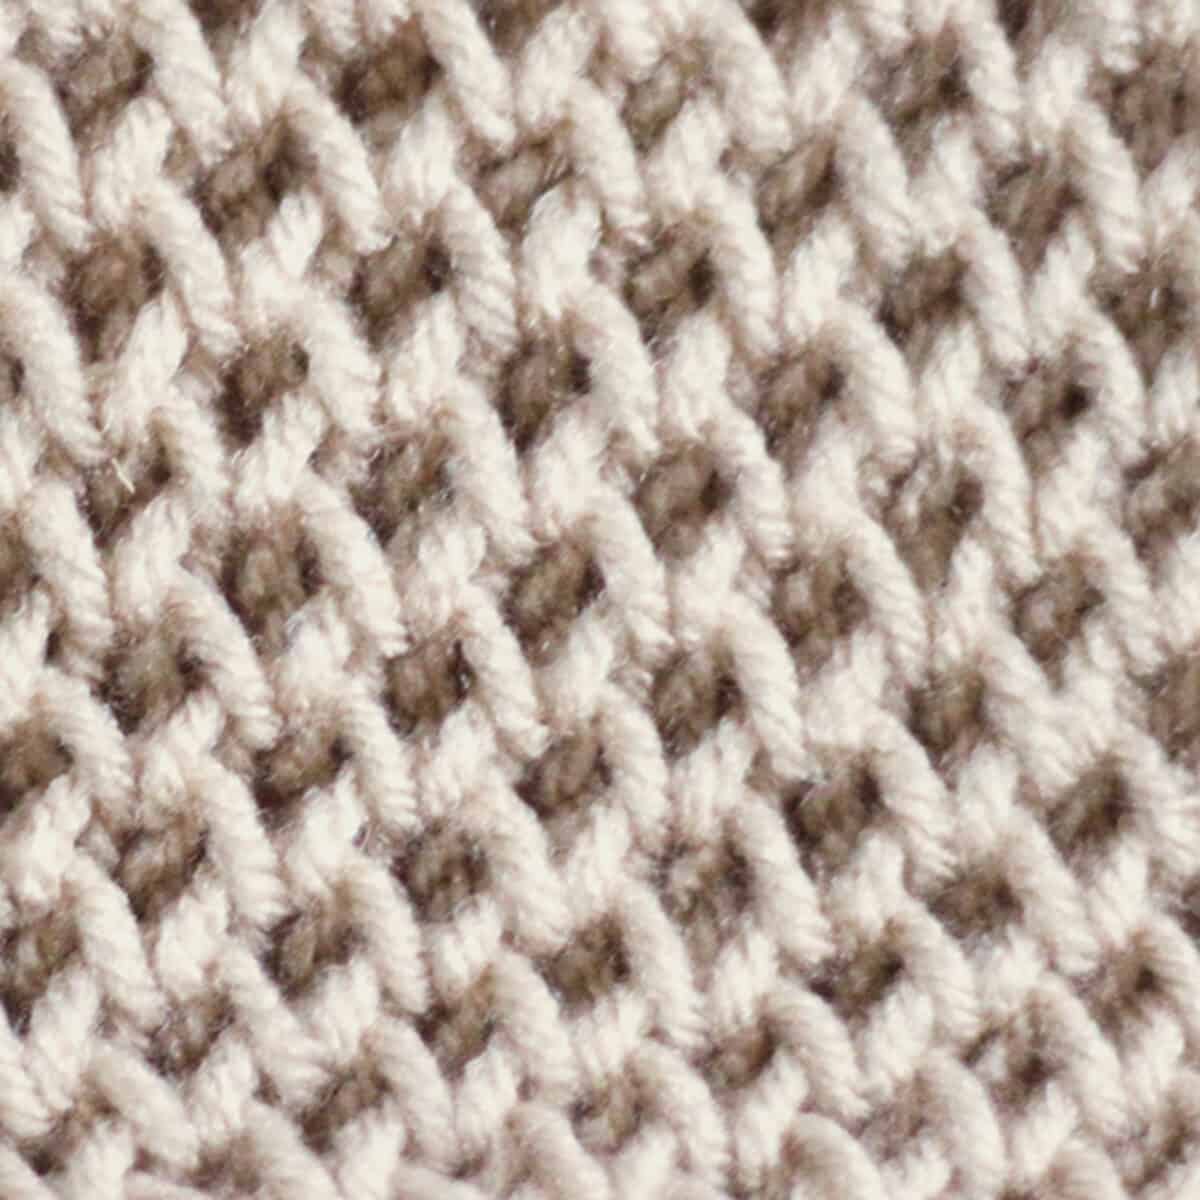 Honeycomb Brioche Knitting Pattern in beige color yarn.